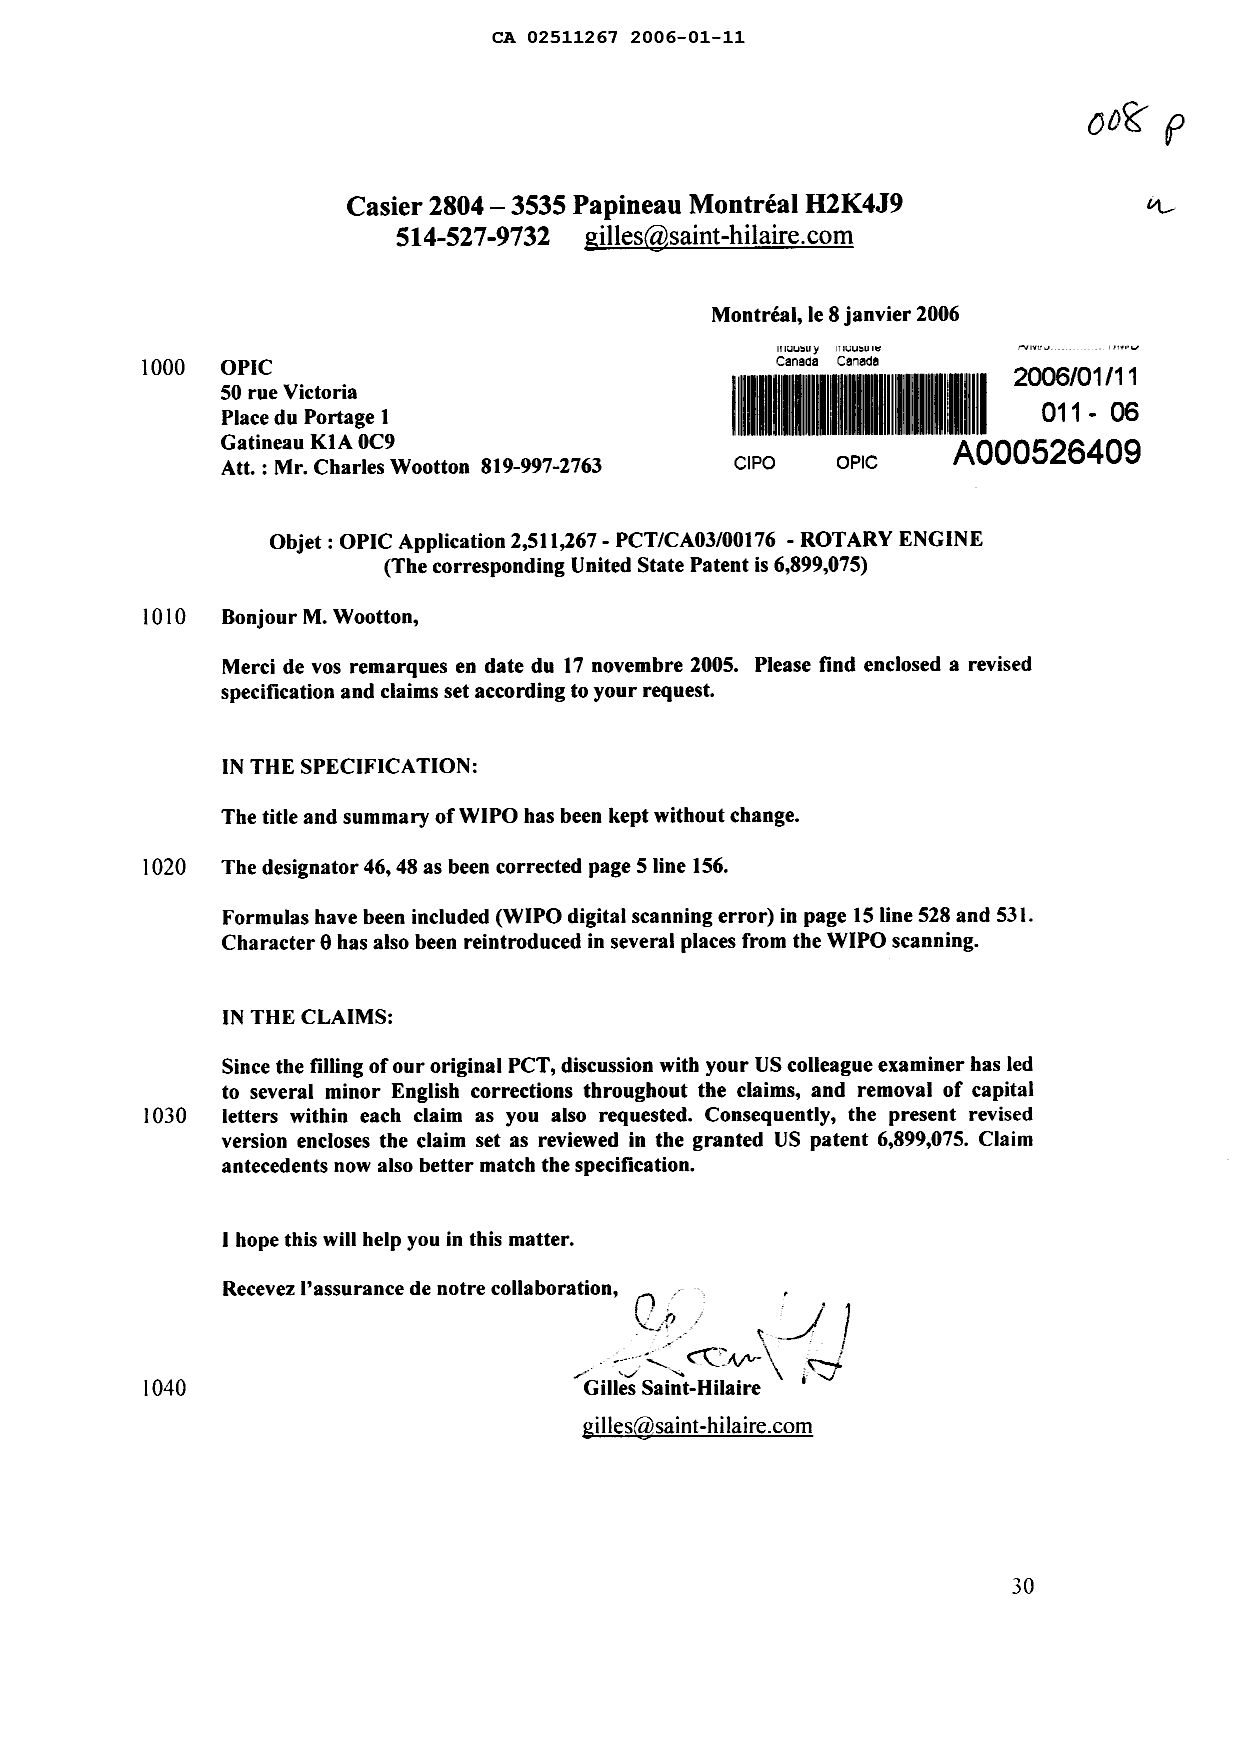 Document de brevet canadien 2511267. Poursuite-Amendment 20051211. Image 1 de 30